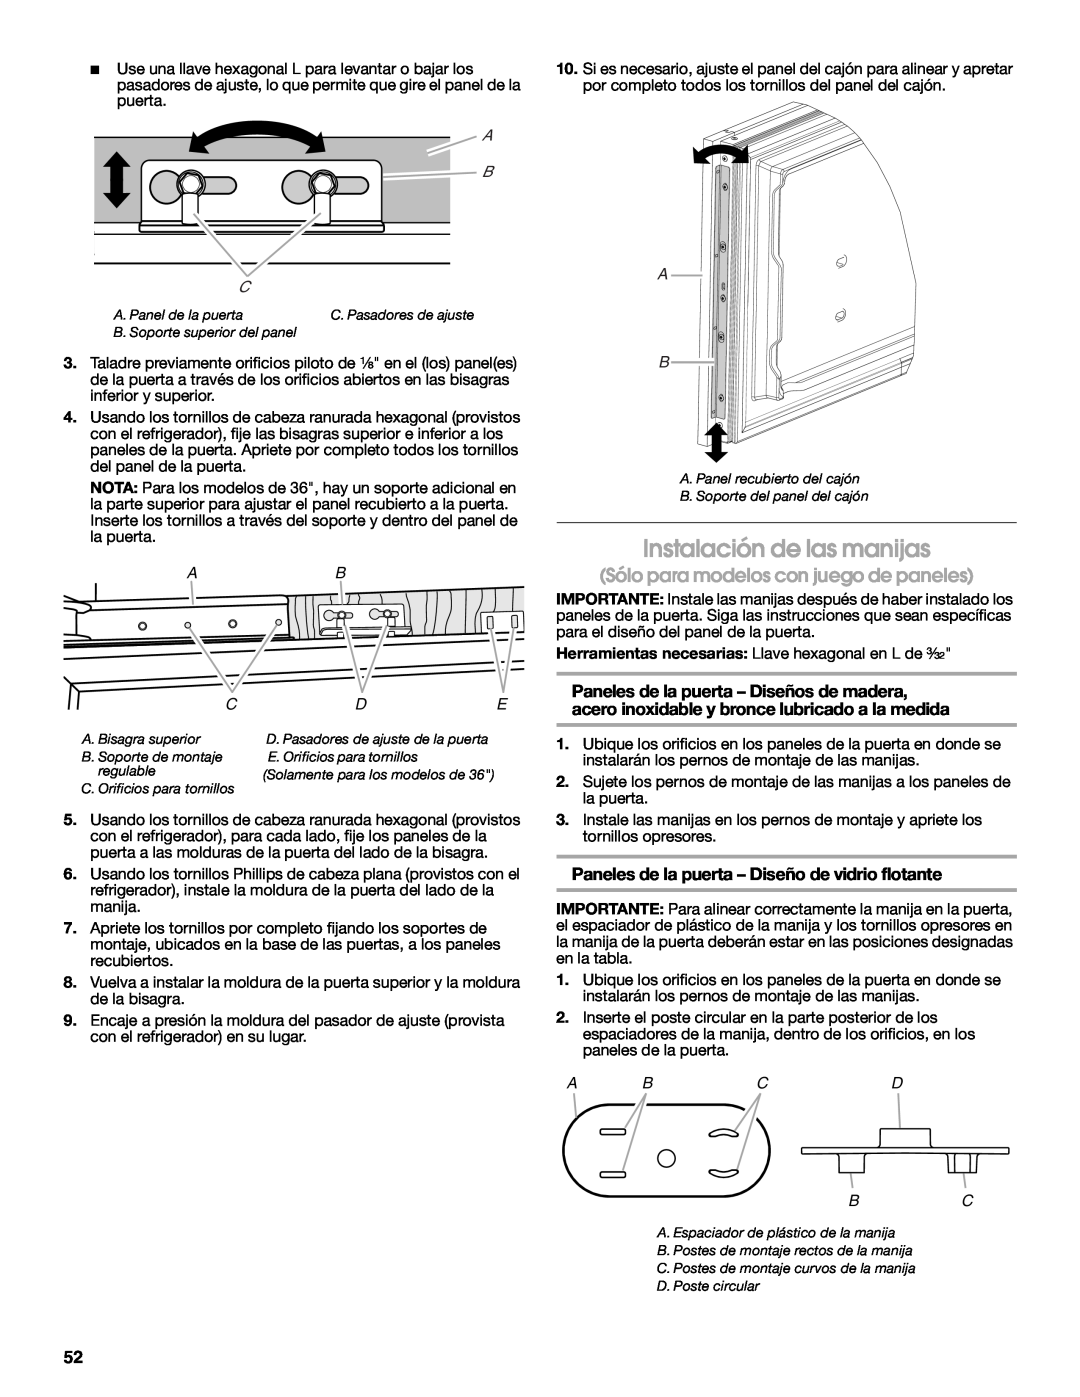 Jenn-Air W10379137A manual Instalación de las manijas, Sólo para modelos con juego de paneles, A B C, Abcd 